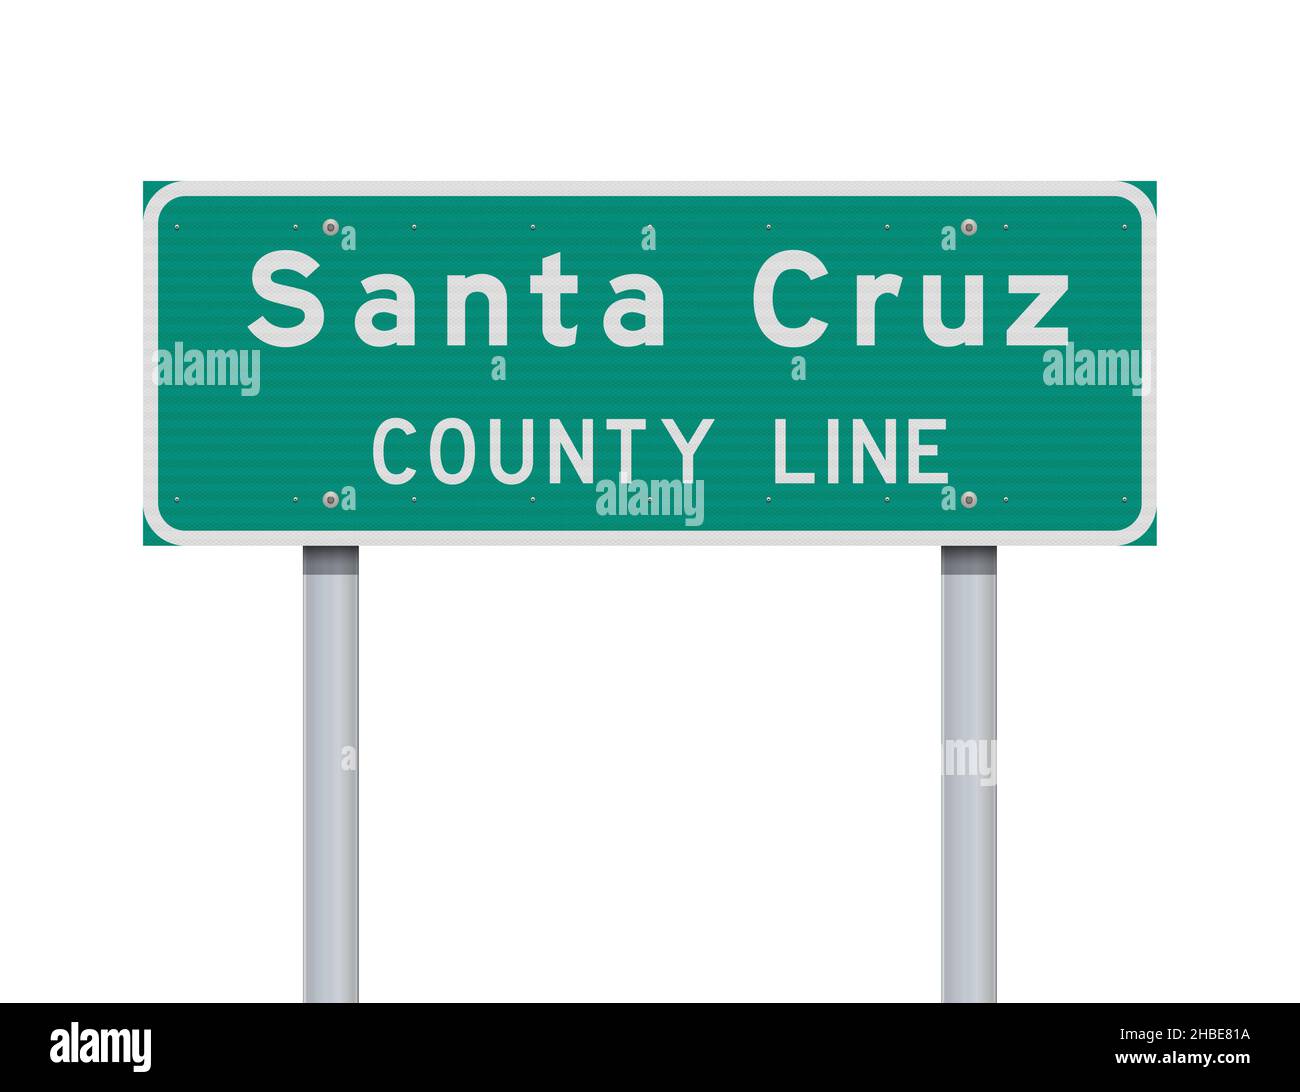 Illustrazione vettoriale del cartello verde della linea della contea di Santa Cruz Illustrazione Vettoriale